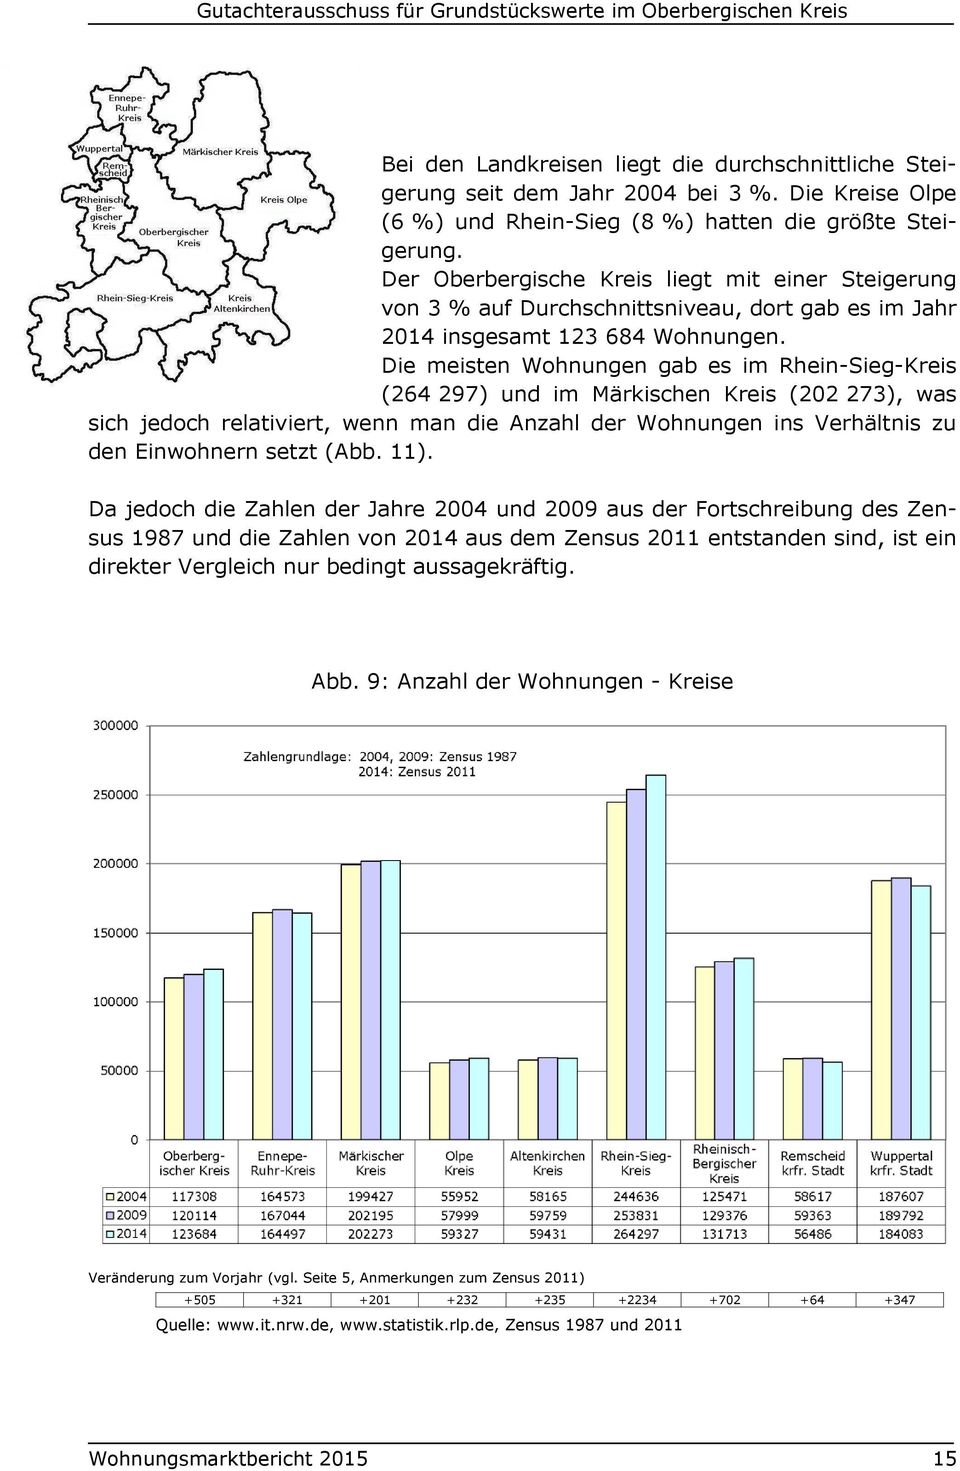 Die meisten Wohnungen gab es im Rhein-Sieg-Kreis (264 297) und im Märkischen Kreis (202 273), was sich jedoch relativiert, wenn man die Anzahl der Wohnungen ins Verhältnis zu den Einwohnern setzt